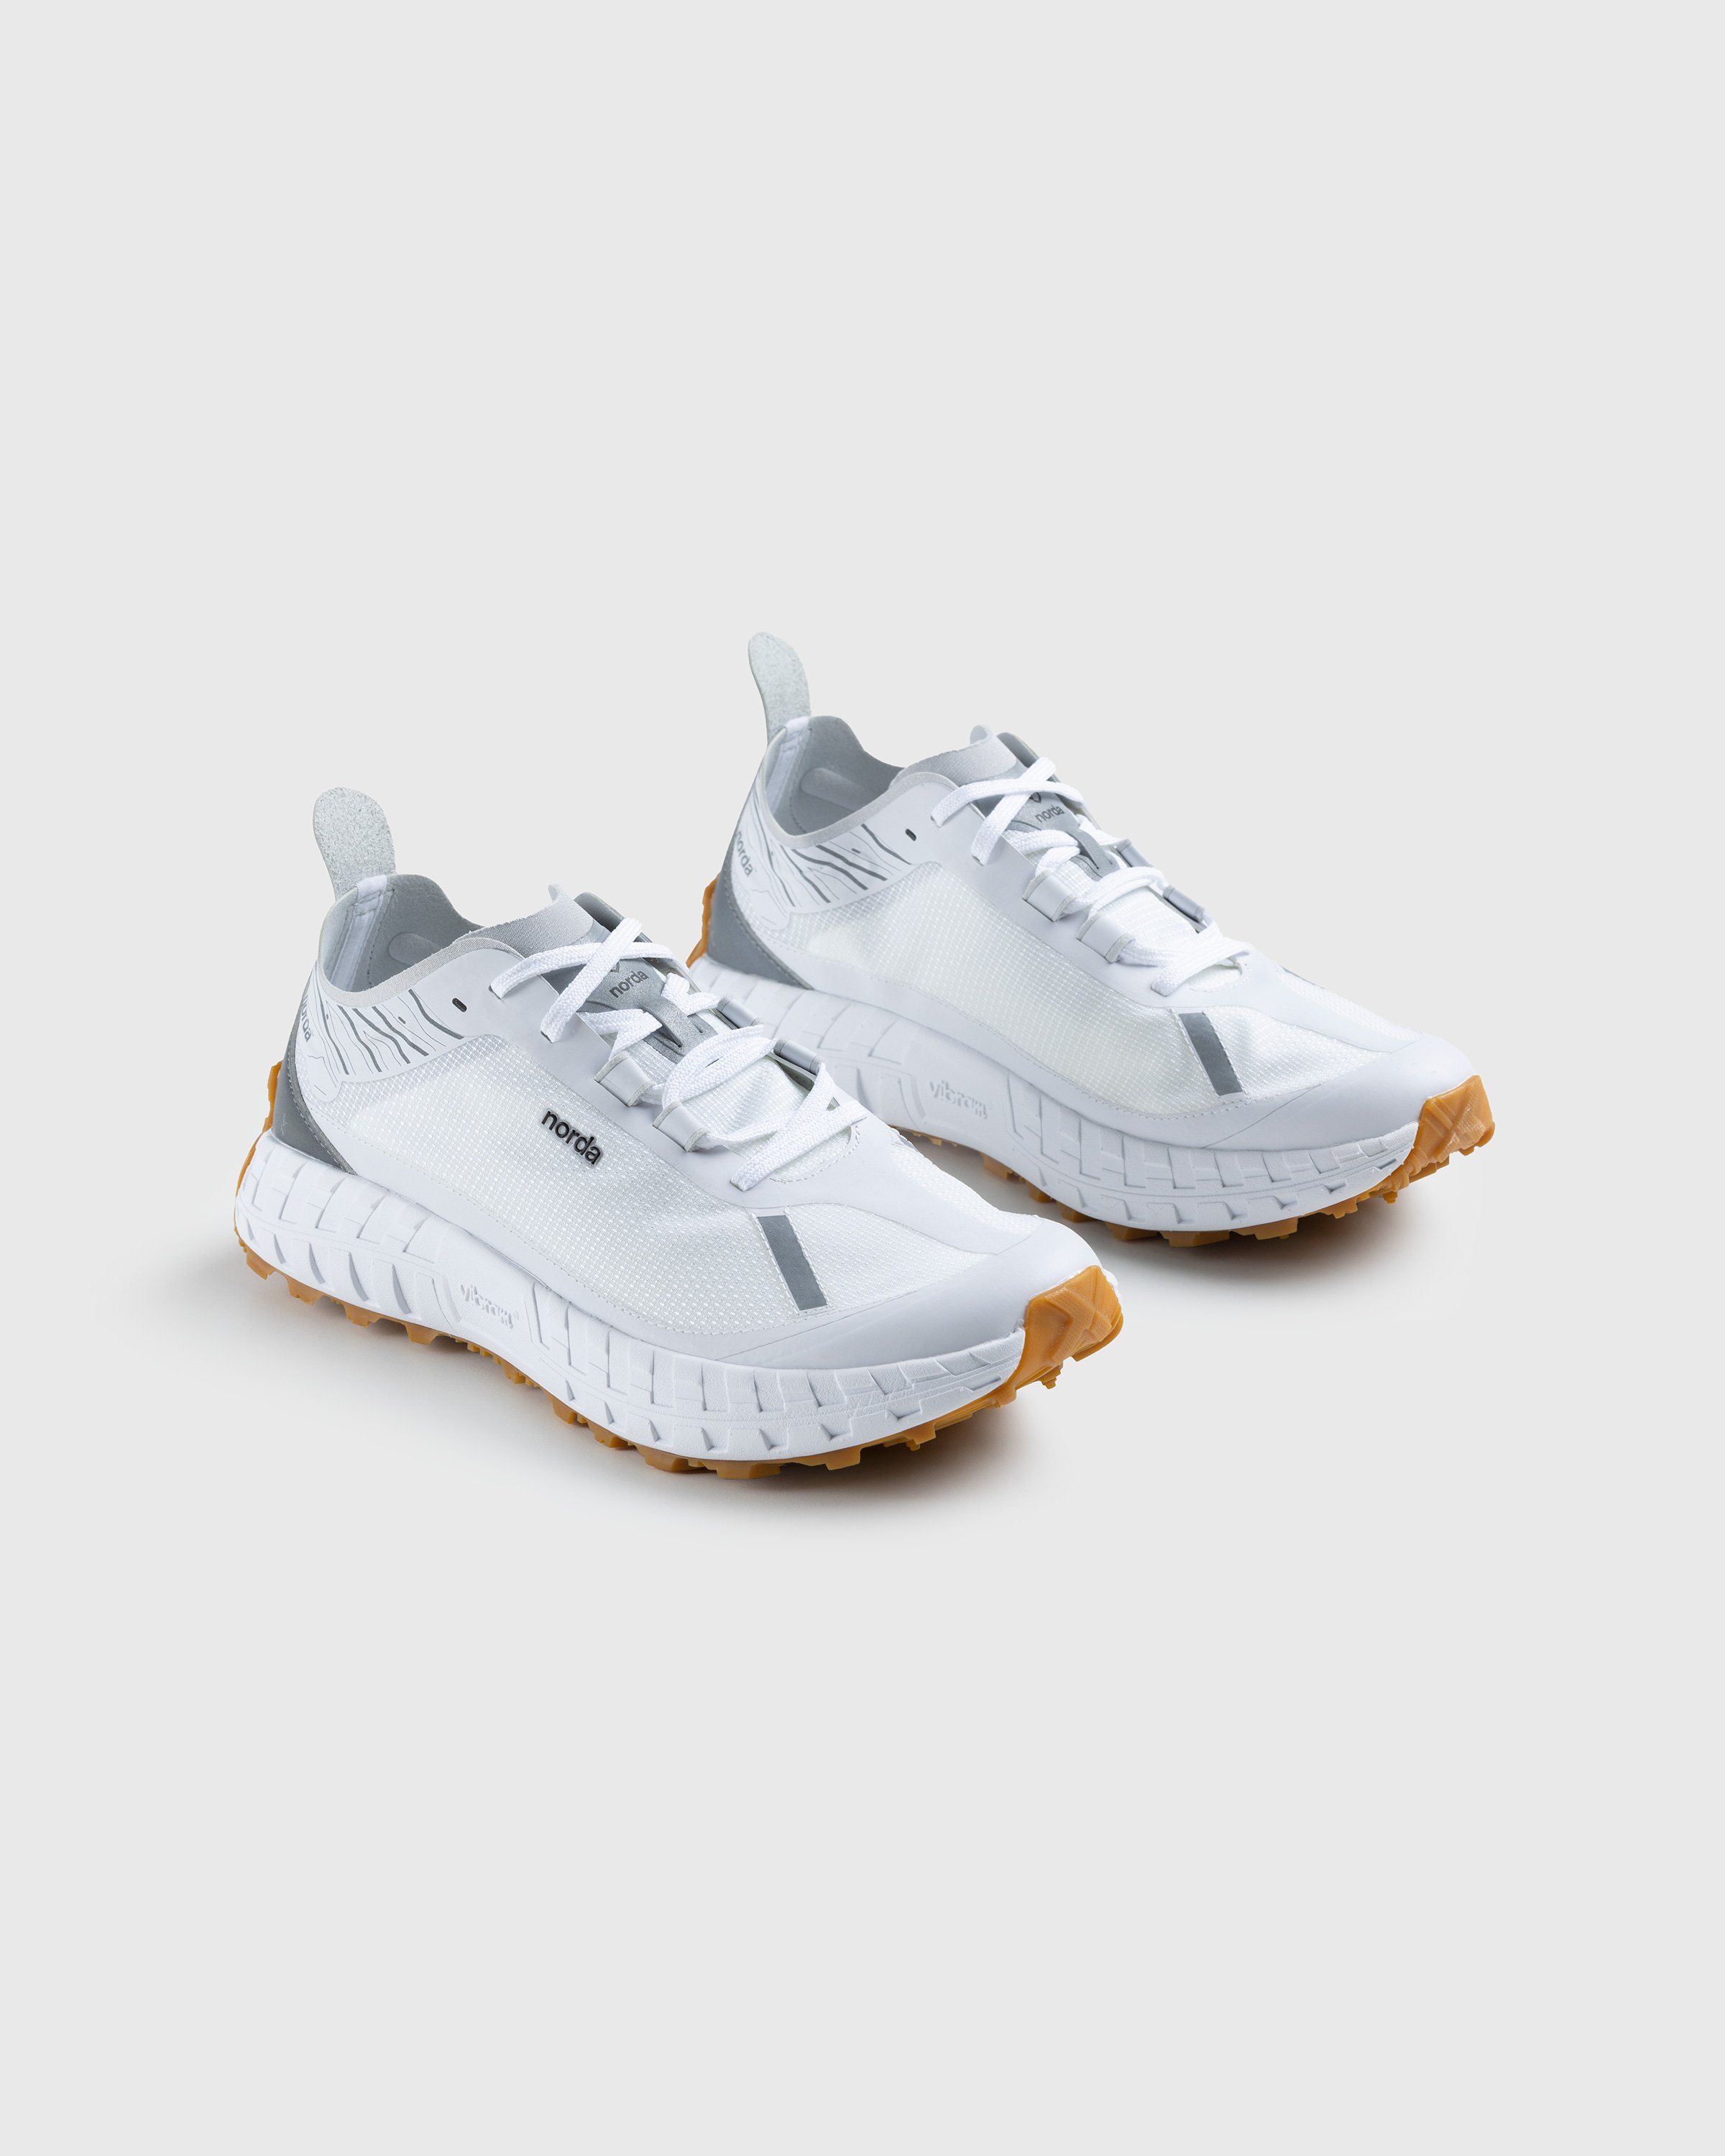 Norda - 001 M White/Gum - Footwear - White - Image 3